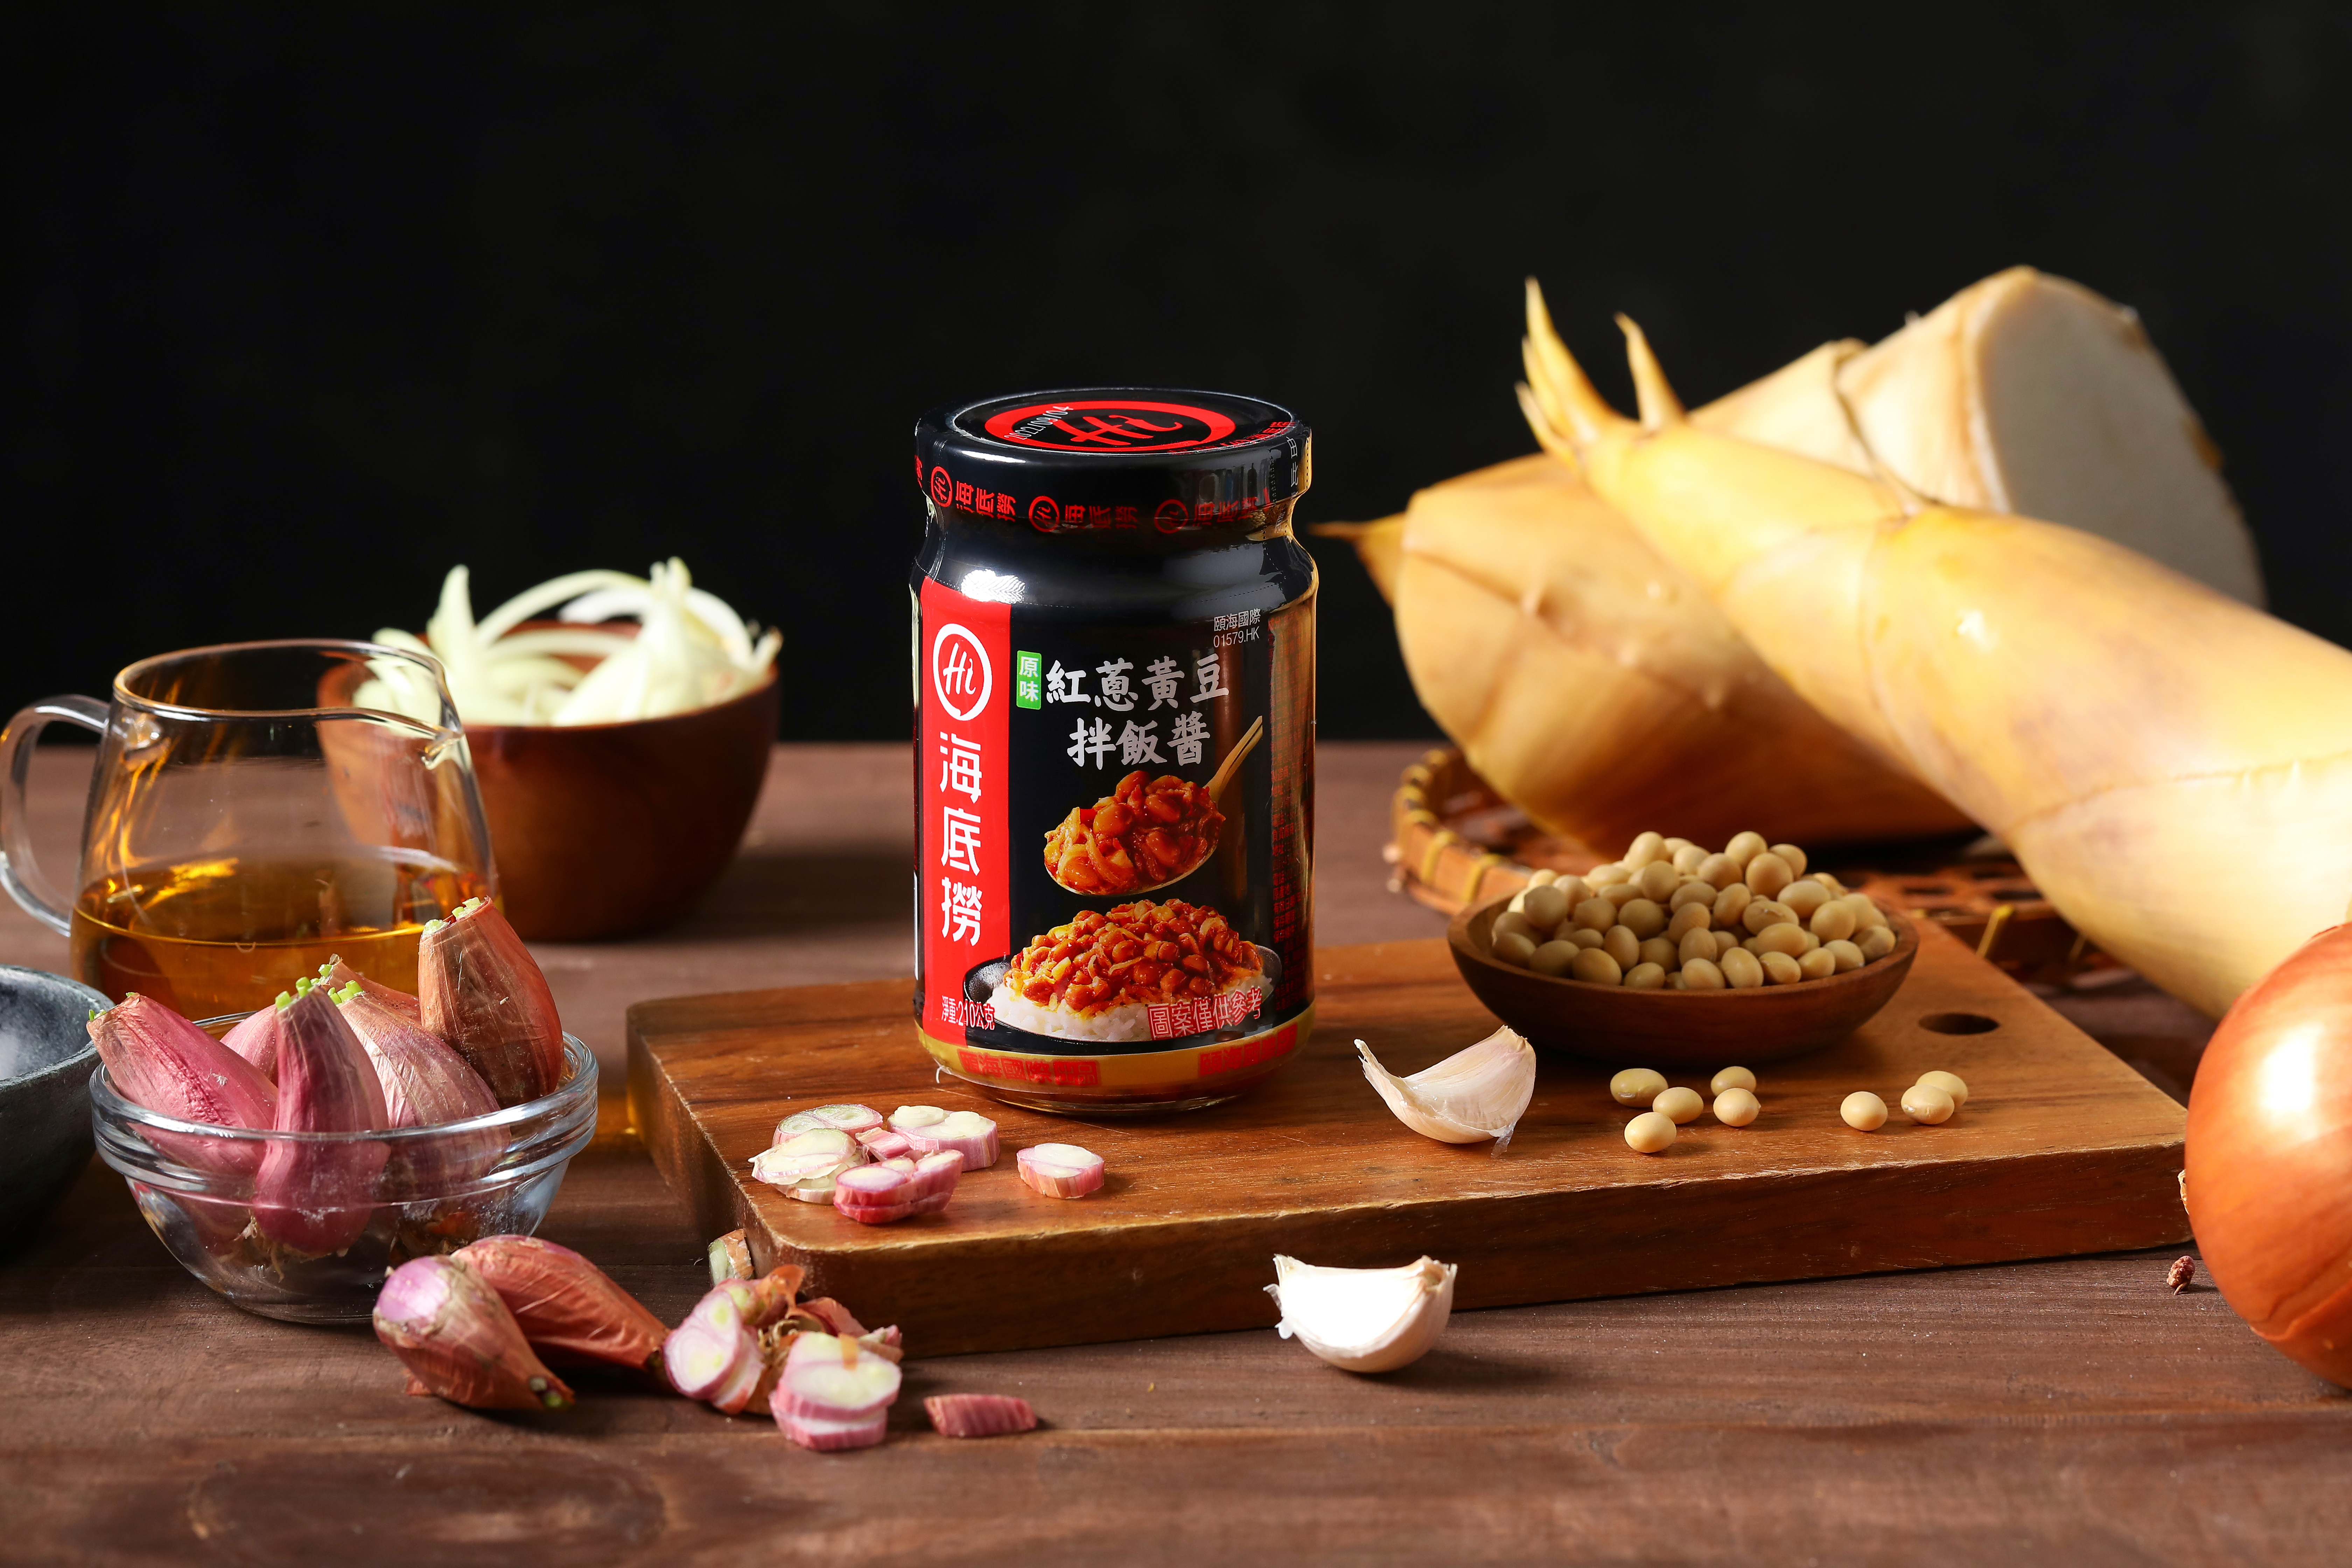 【海底撈】拌飯醬系列 紅蔥黃豆&燕麥雙椒 210g/罐